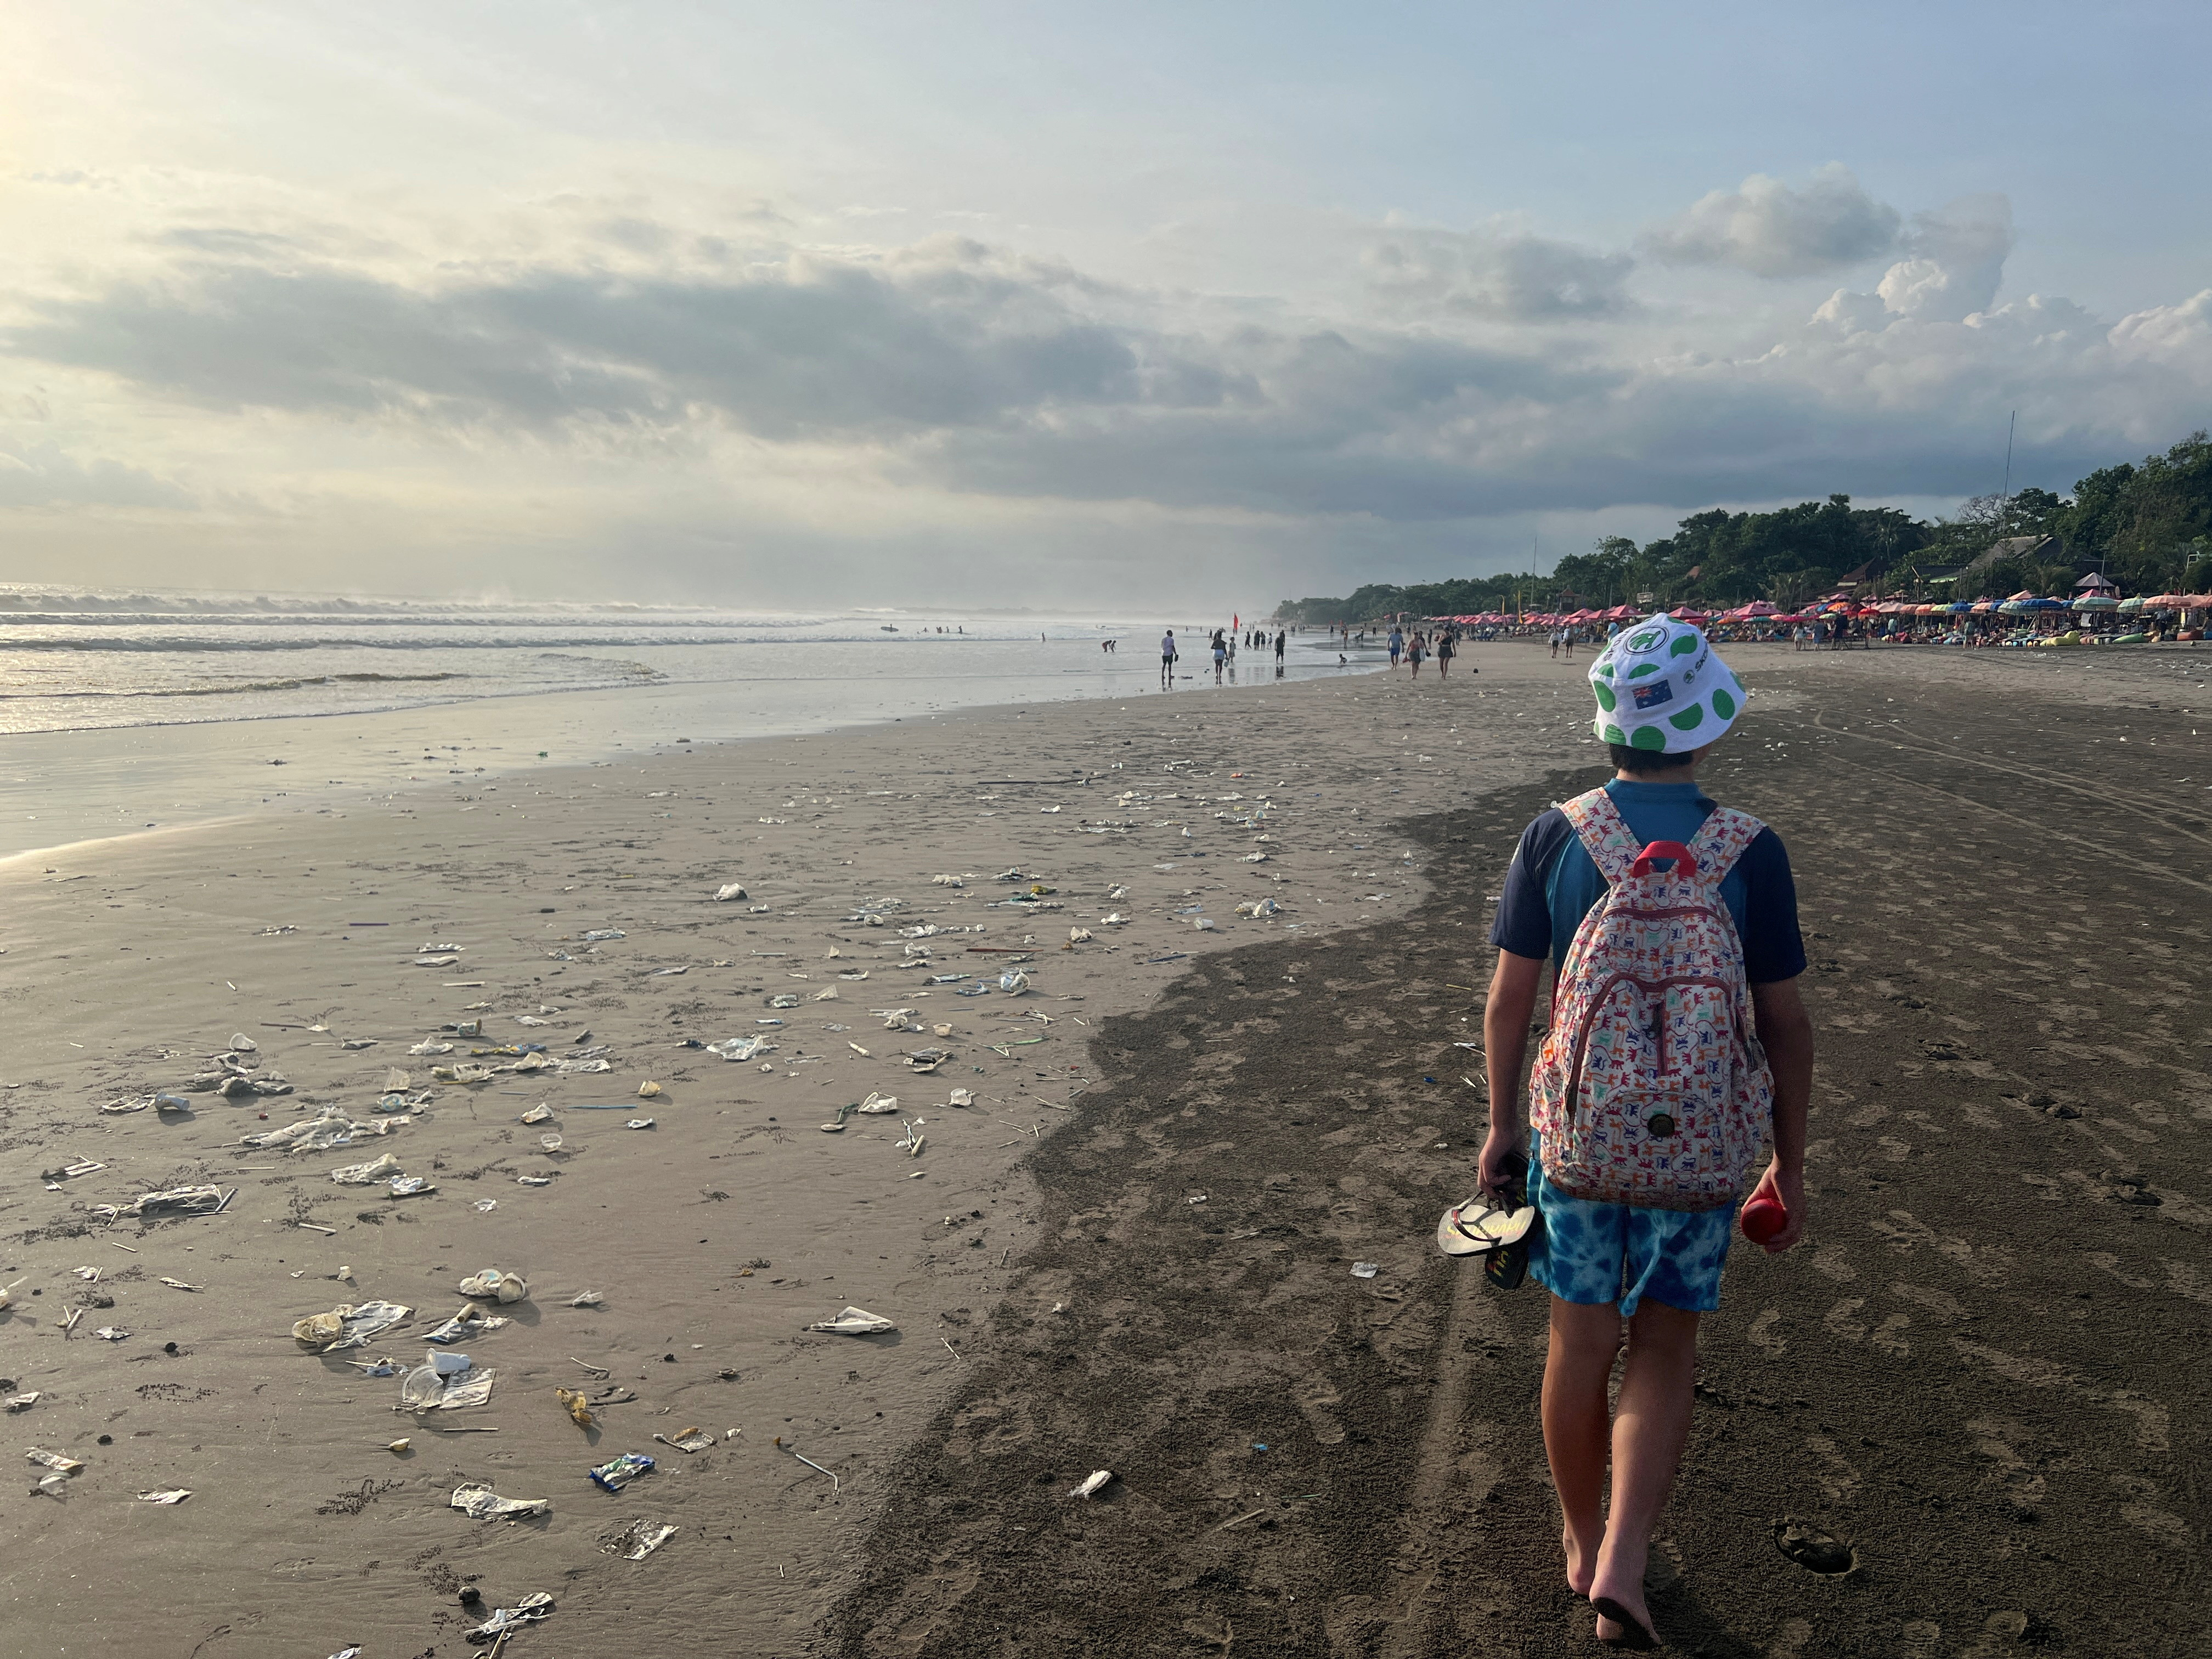 A boy walks on a beach polluted by plastic trash in Bali